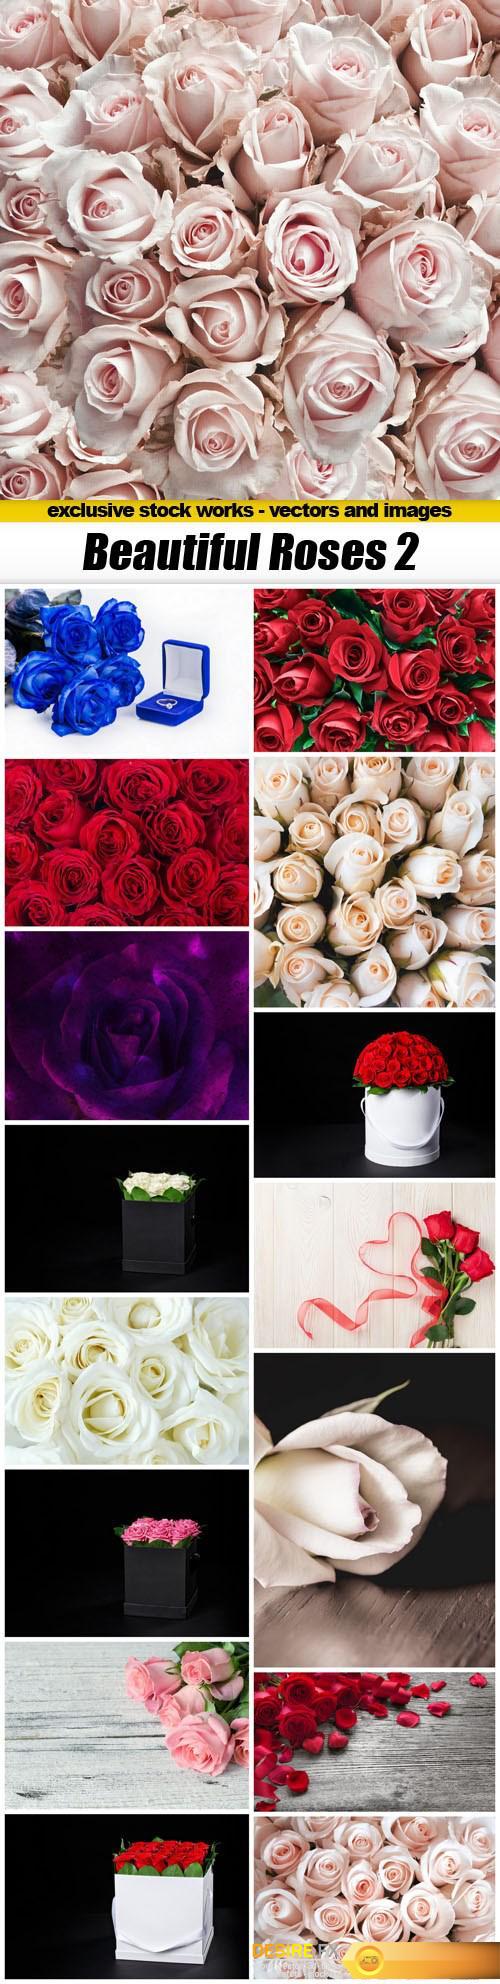 Beautiful Roses 2 - 16xUHQ JPEG